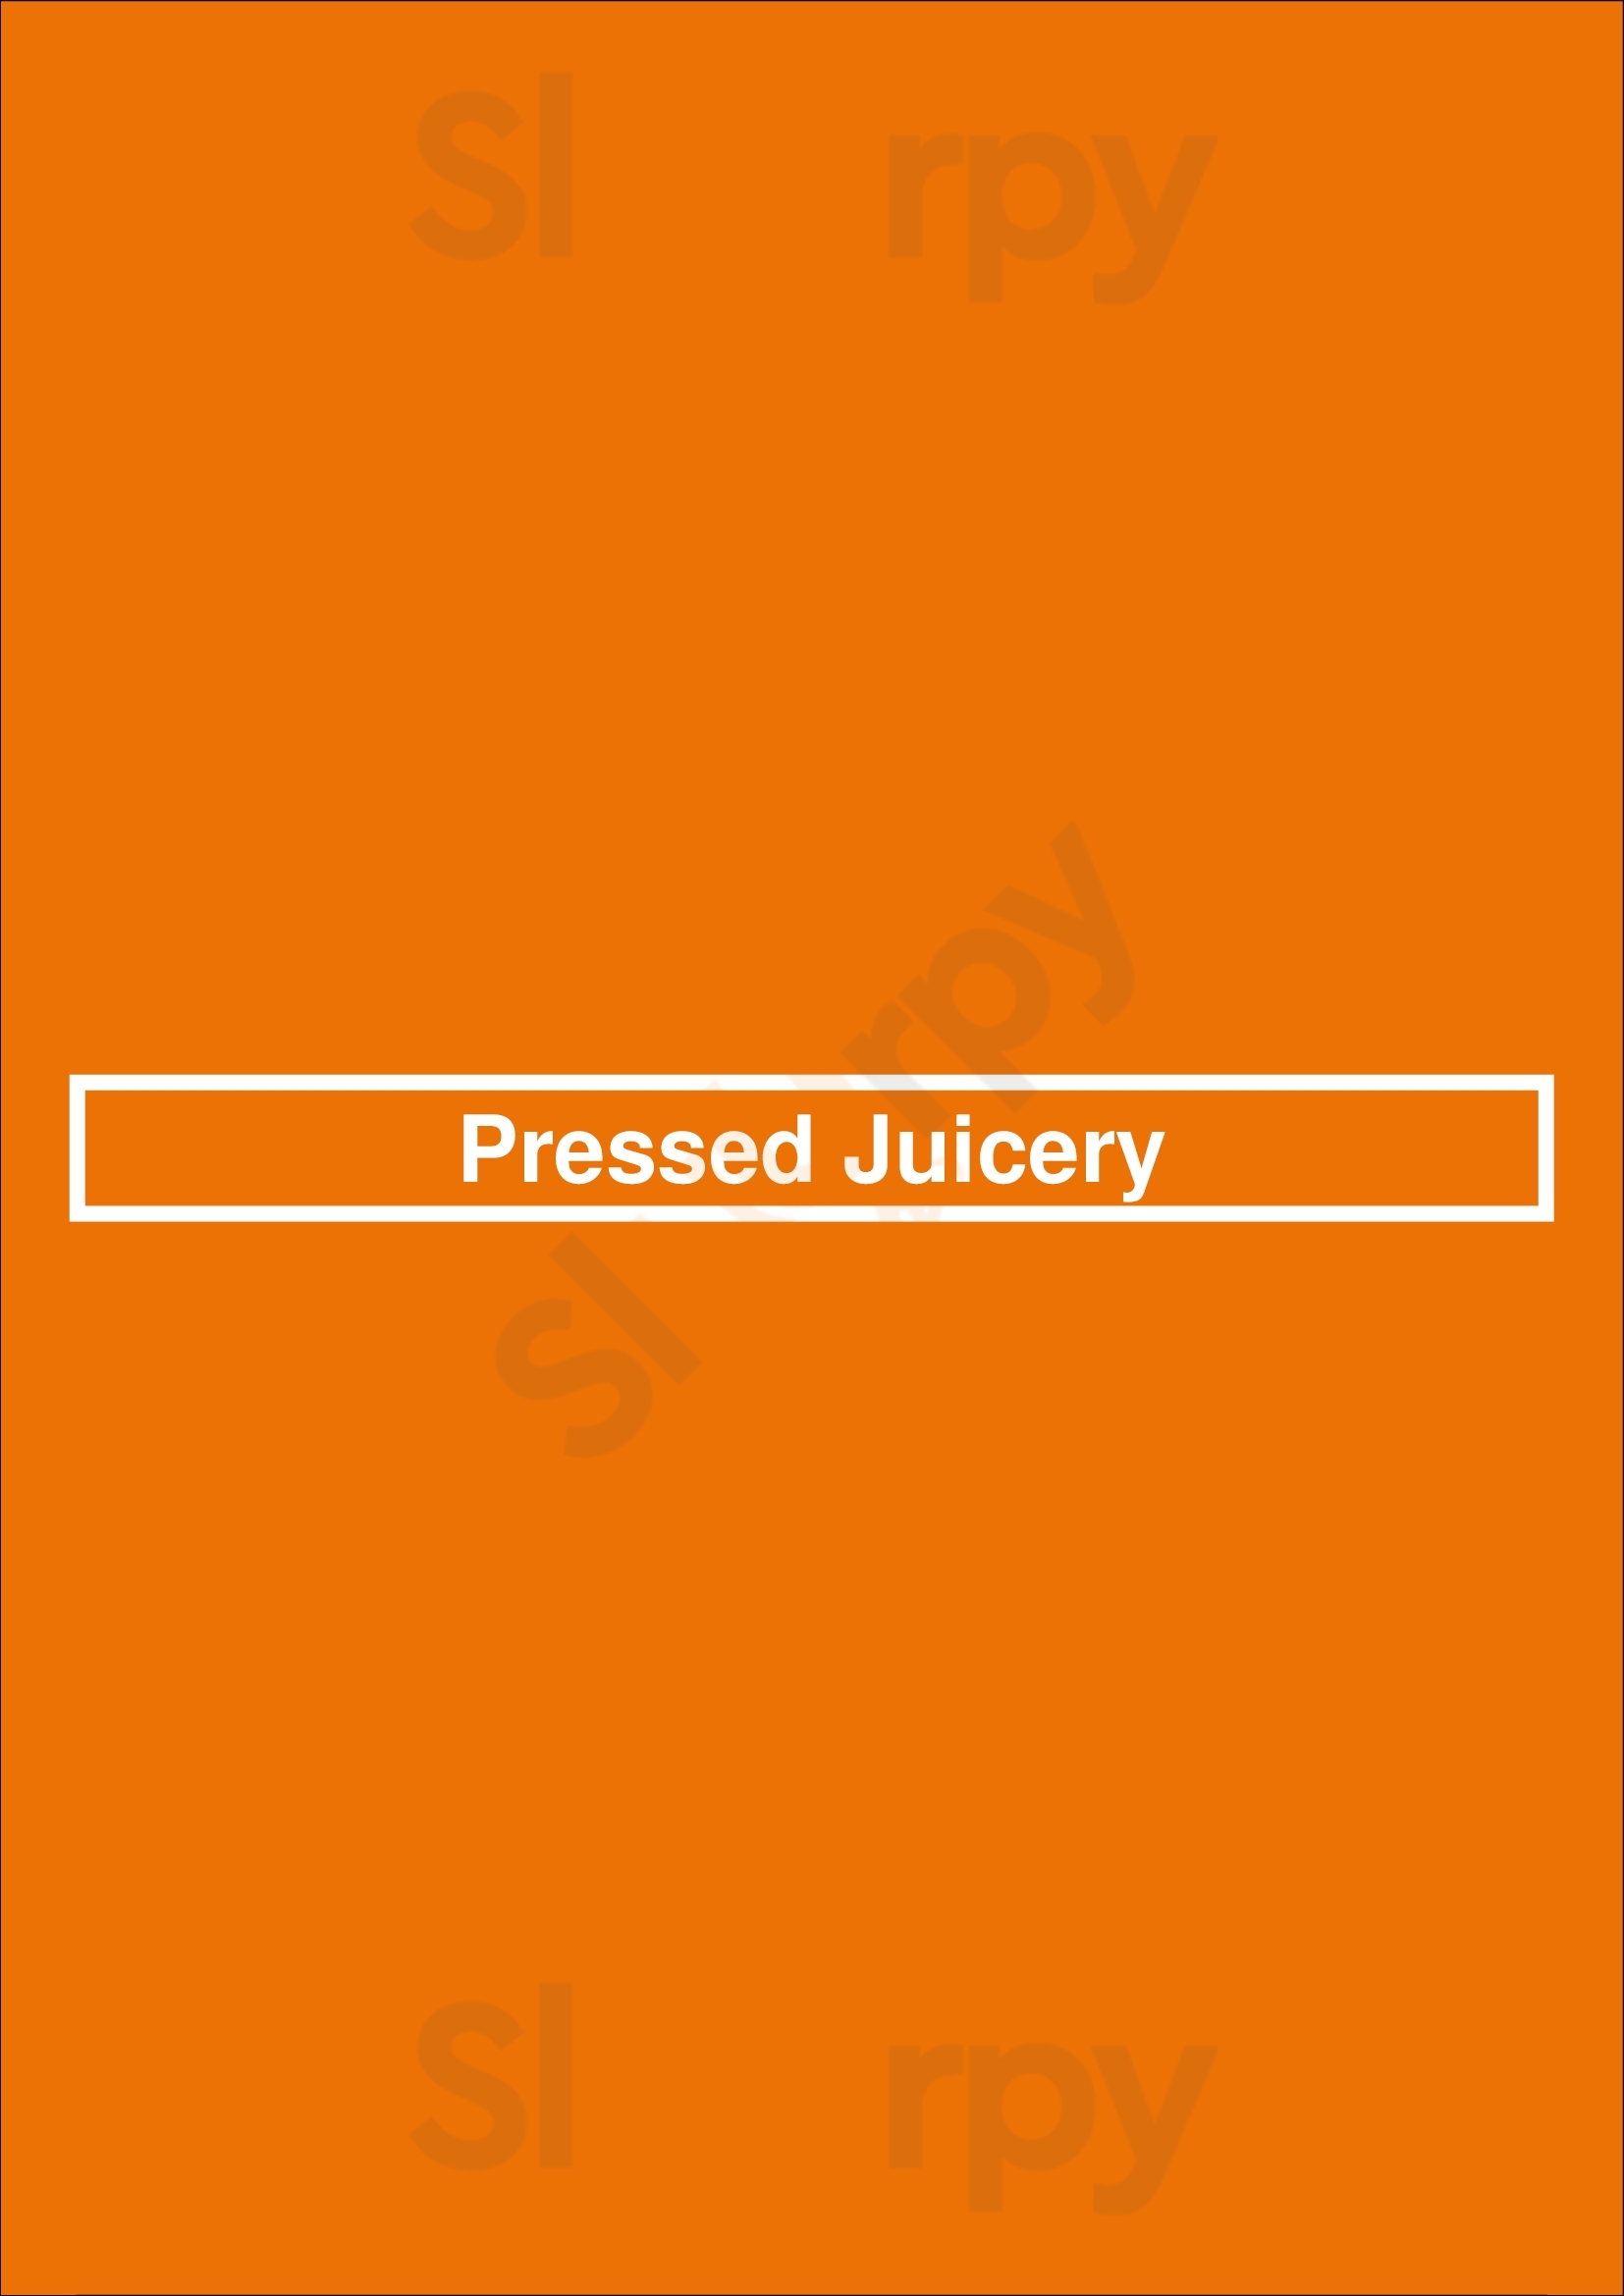 Pressed Juicery New York City Menu - 1